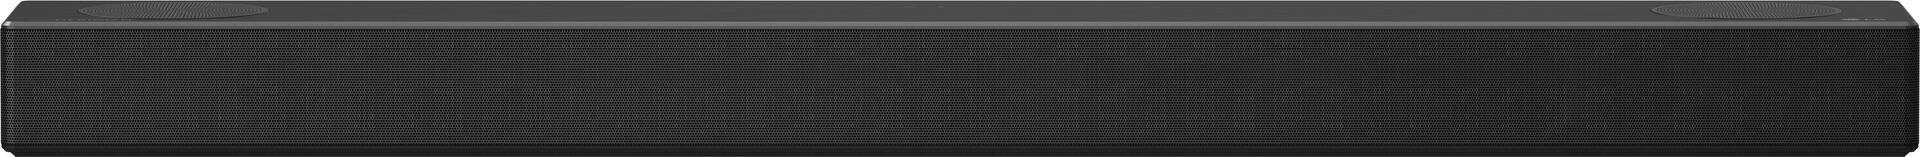 LG SN7CY 3.0.2 Dolby Atmos Soundbar, 160 Watt, schwarz